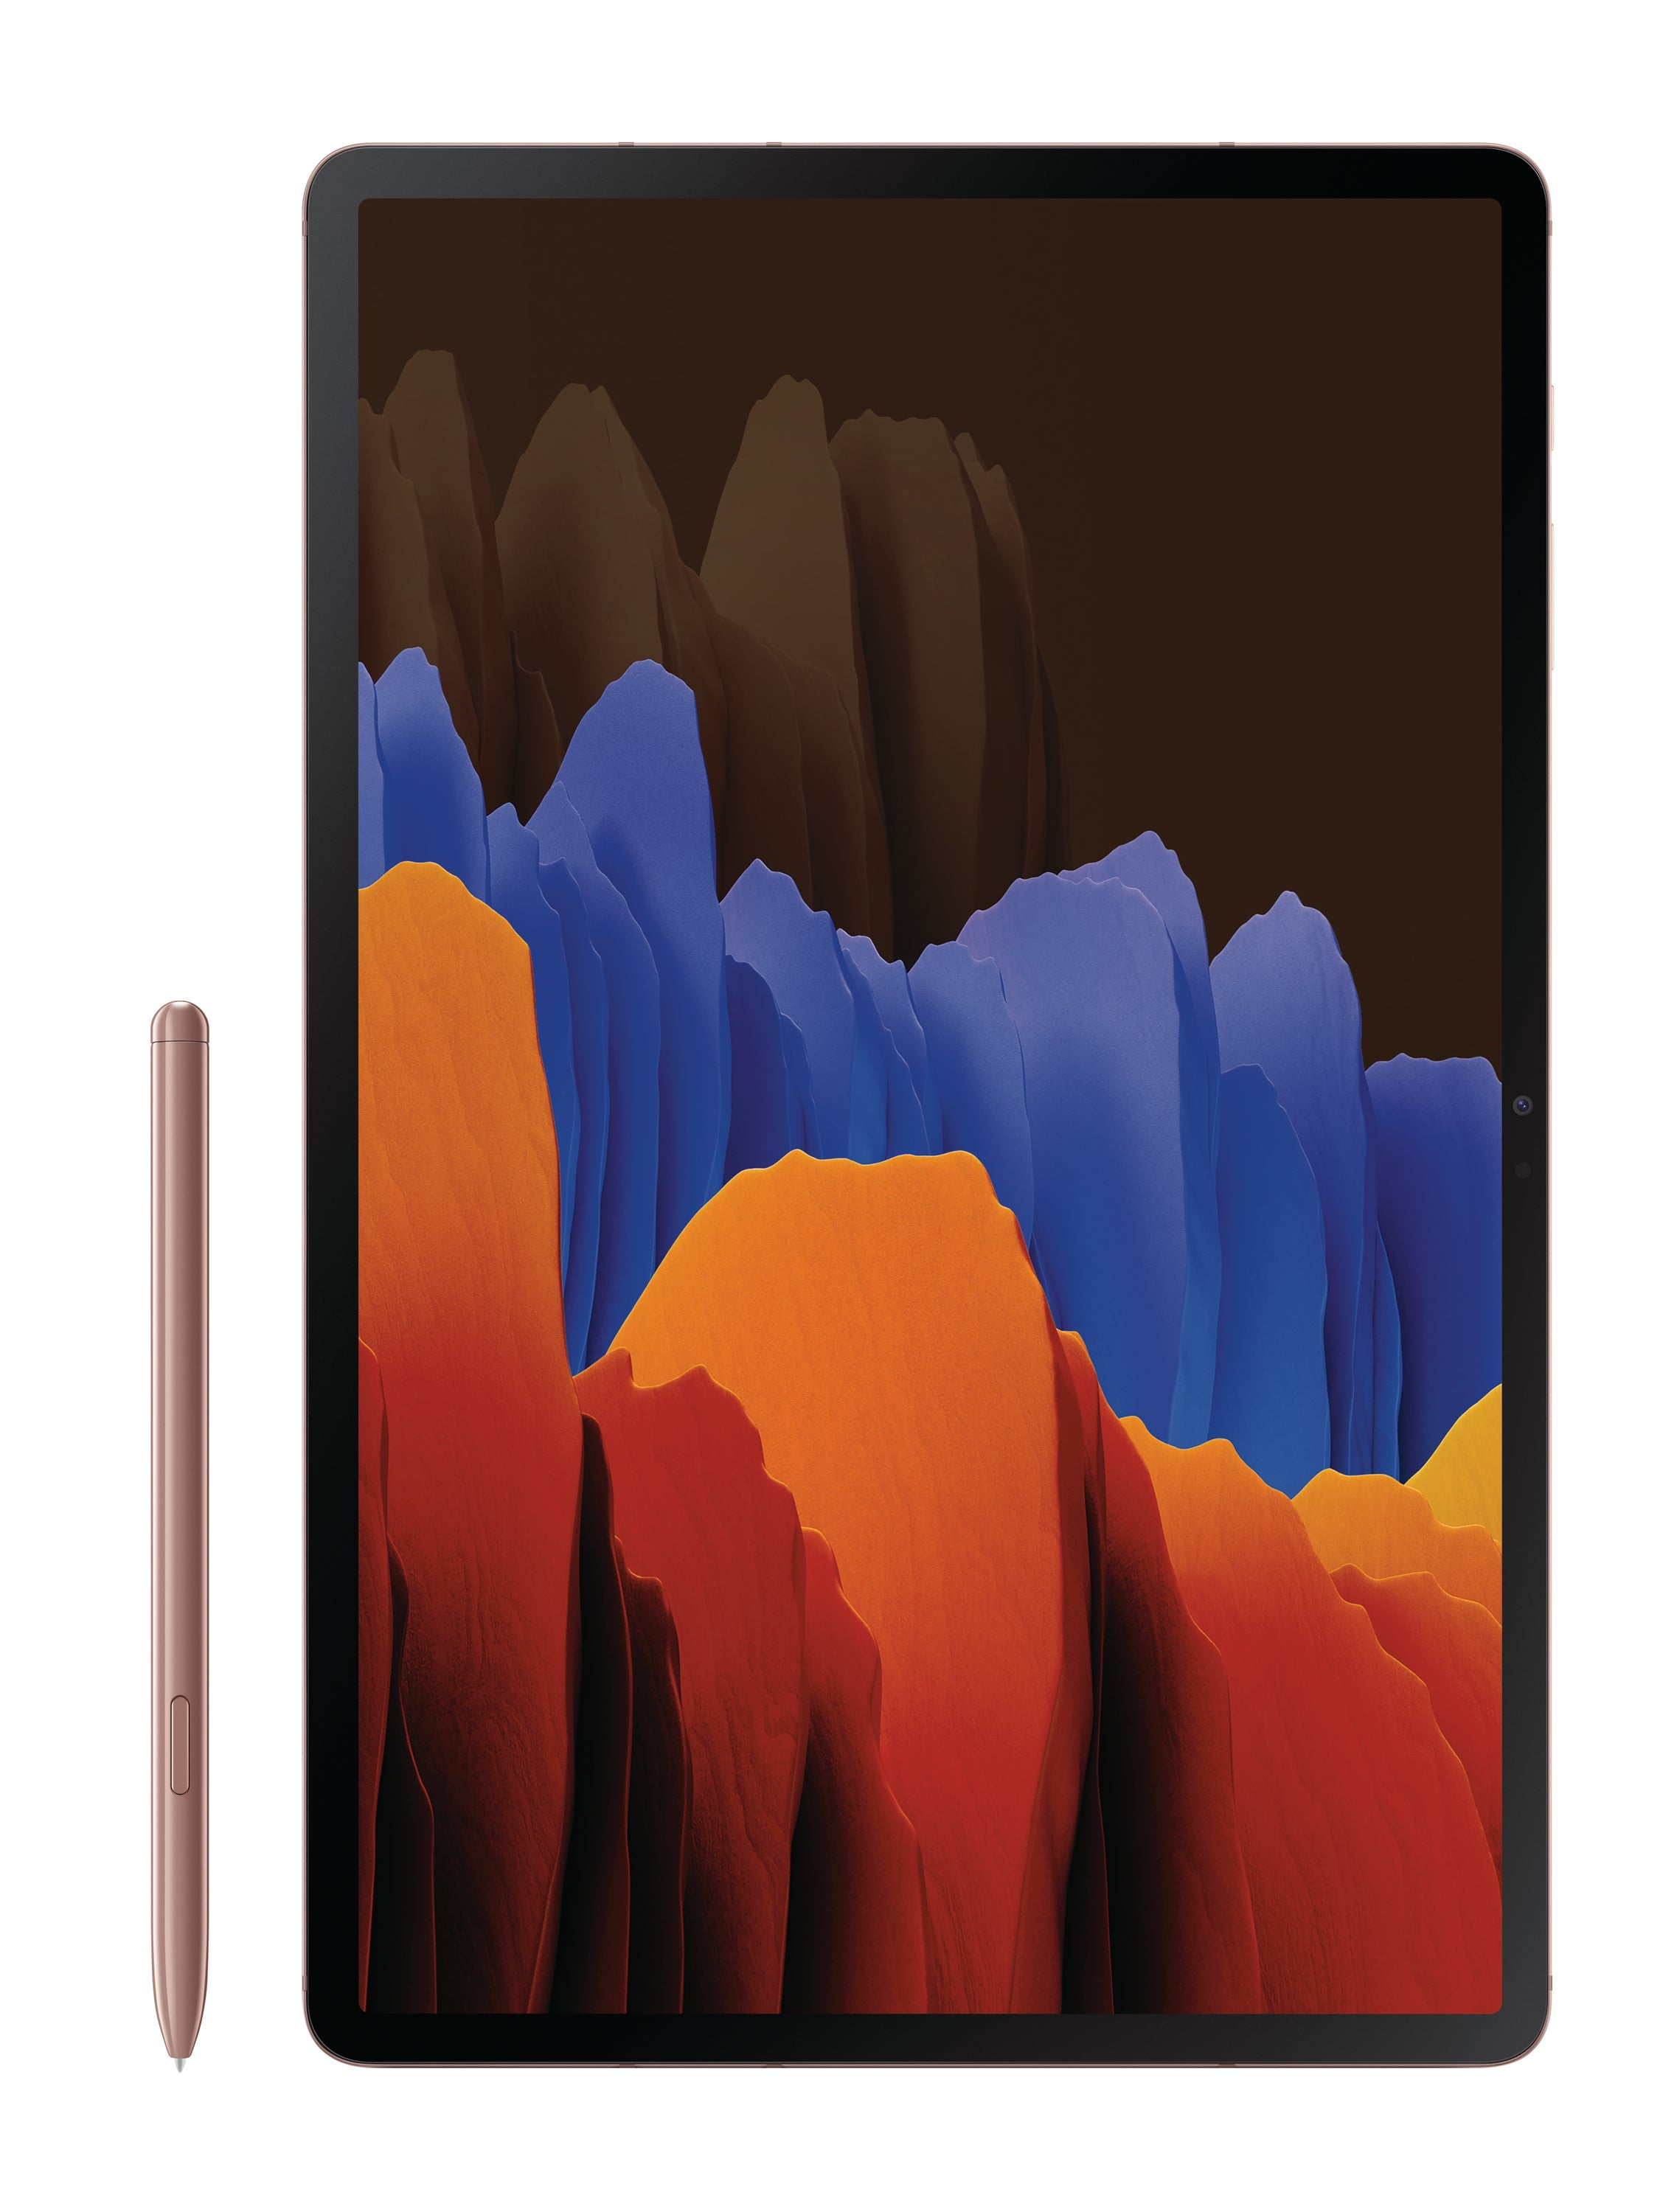 国内発送 【Sペン付】Galaxy Tab S7 Mystic Bronze US版 タブレット